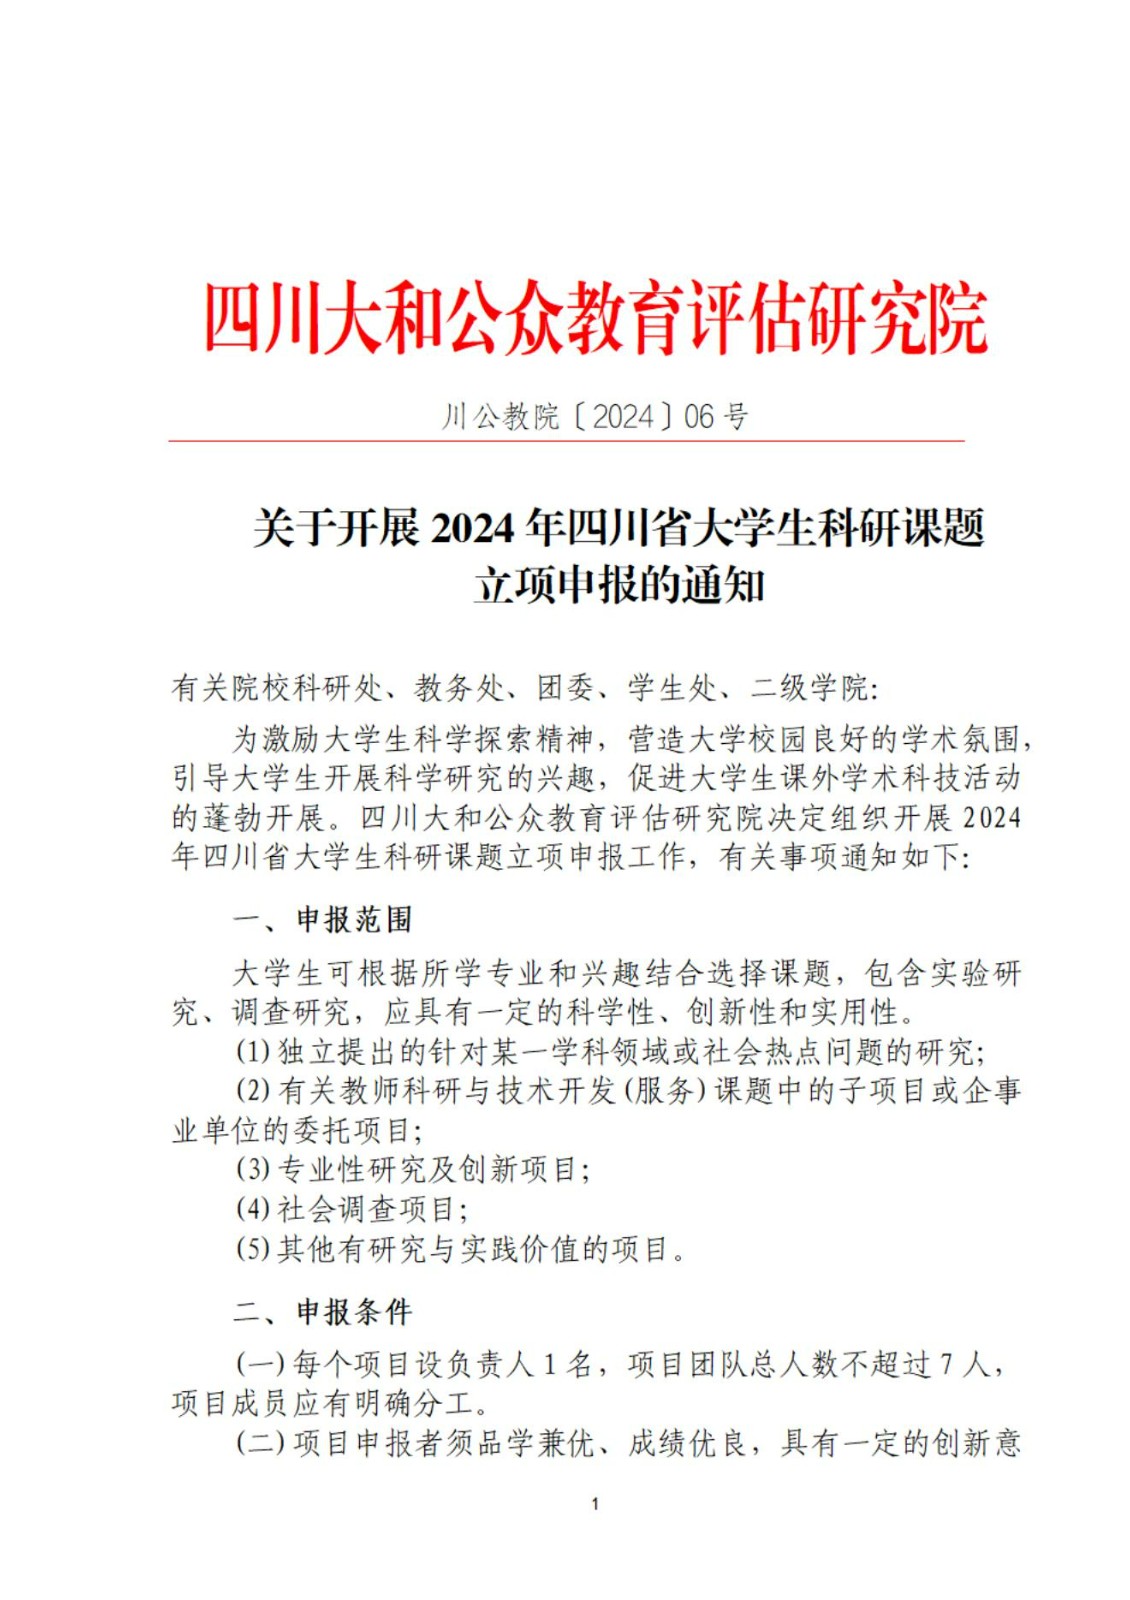 关于开展2024年四川省大学生科研课题 立项申报的通知